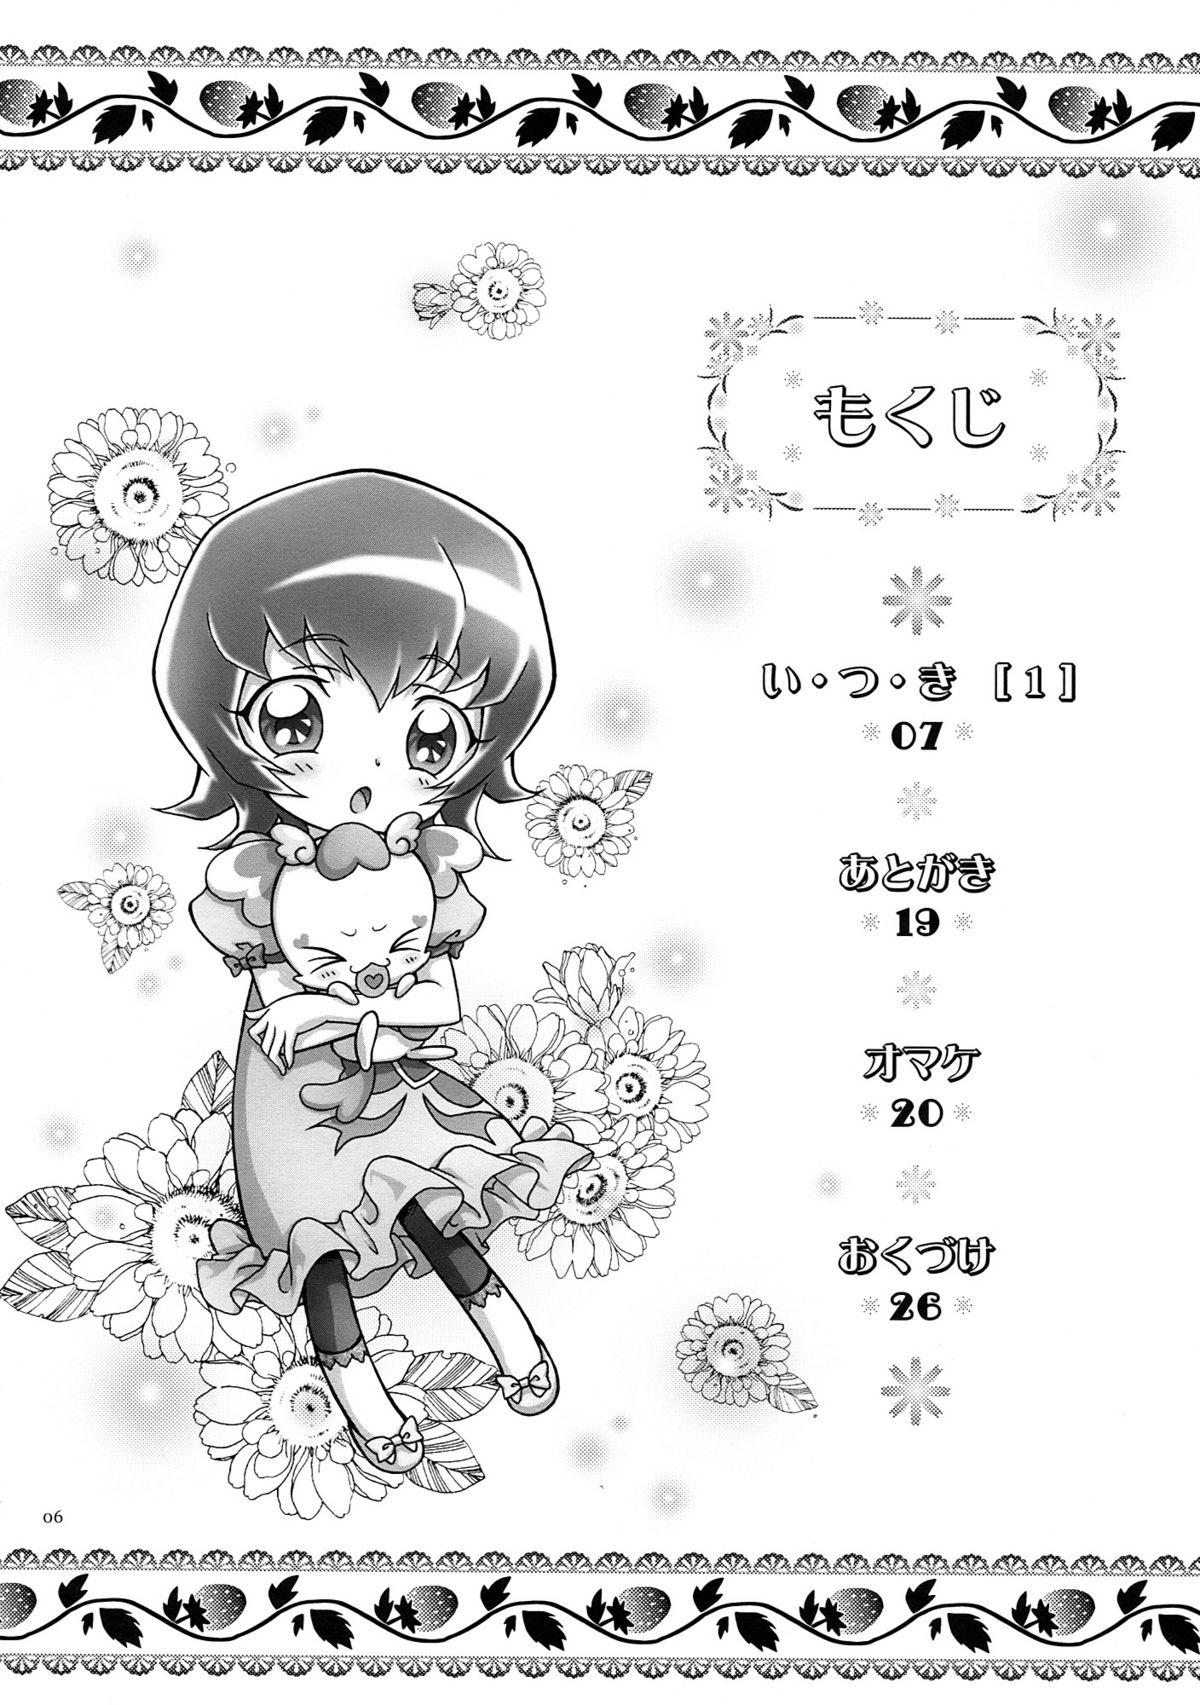 Flagra Itsuki 1 - Heartcatch precure Comendo - Page 6